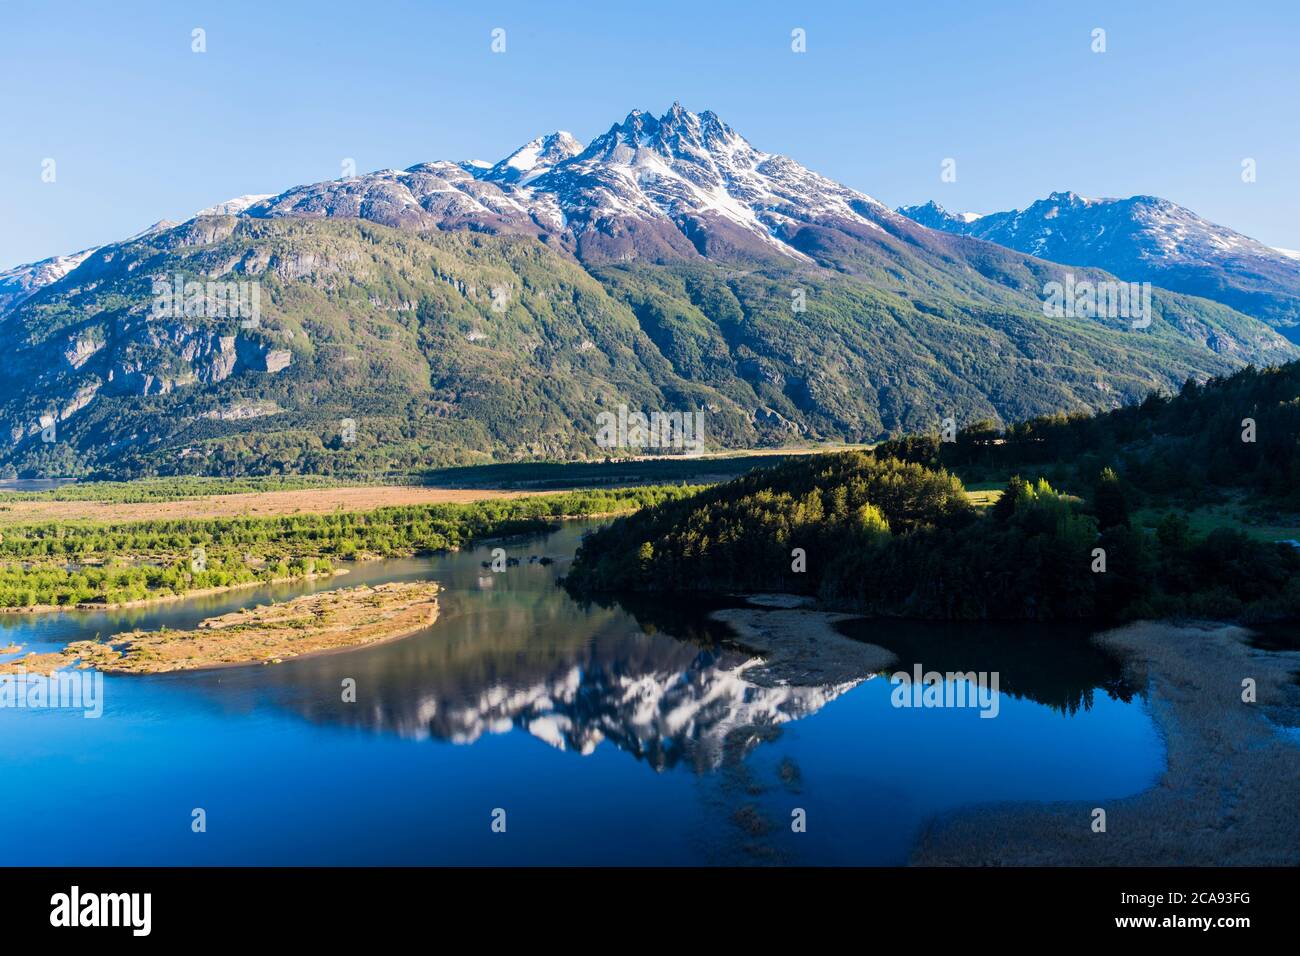 La catena montuosa del Castillo e l'ampia valle del fiume Ibanez vista, la Pan-American Highway, la regione di Aysen, Patagonia, Cile, Sud America Foto Stock